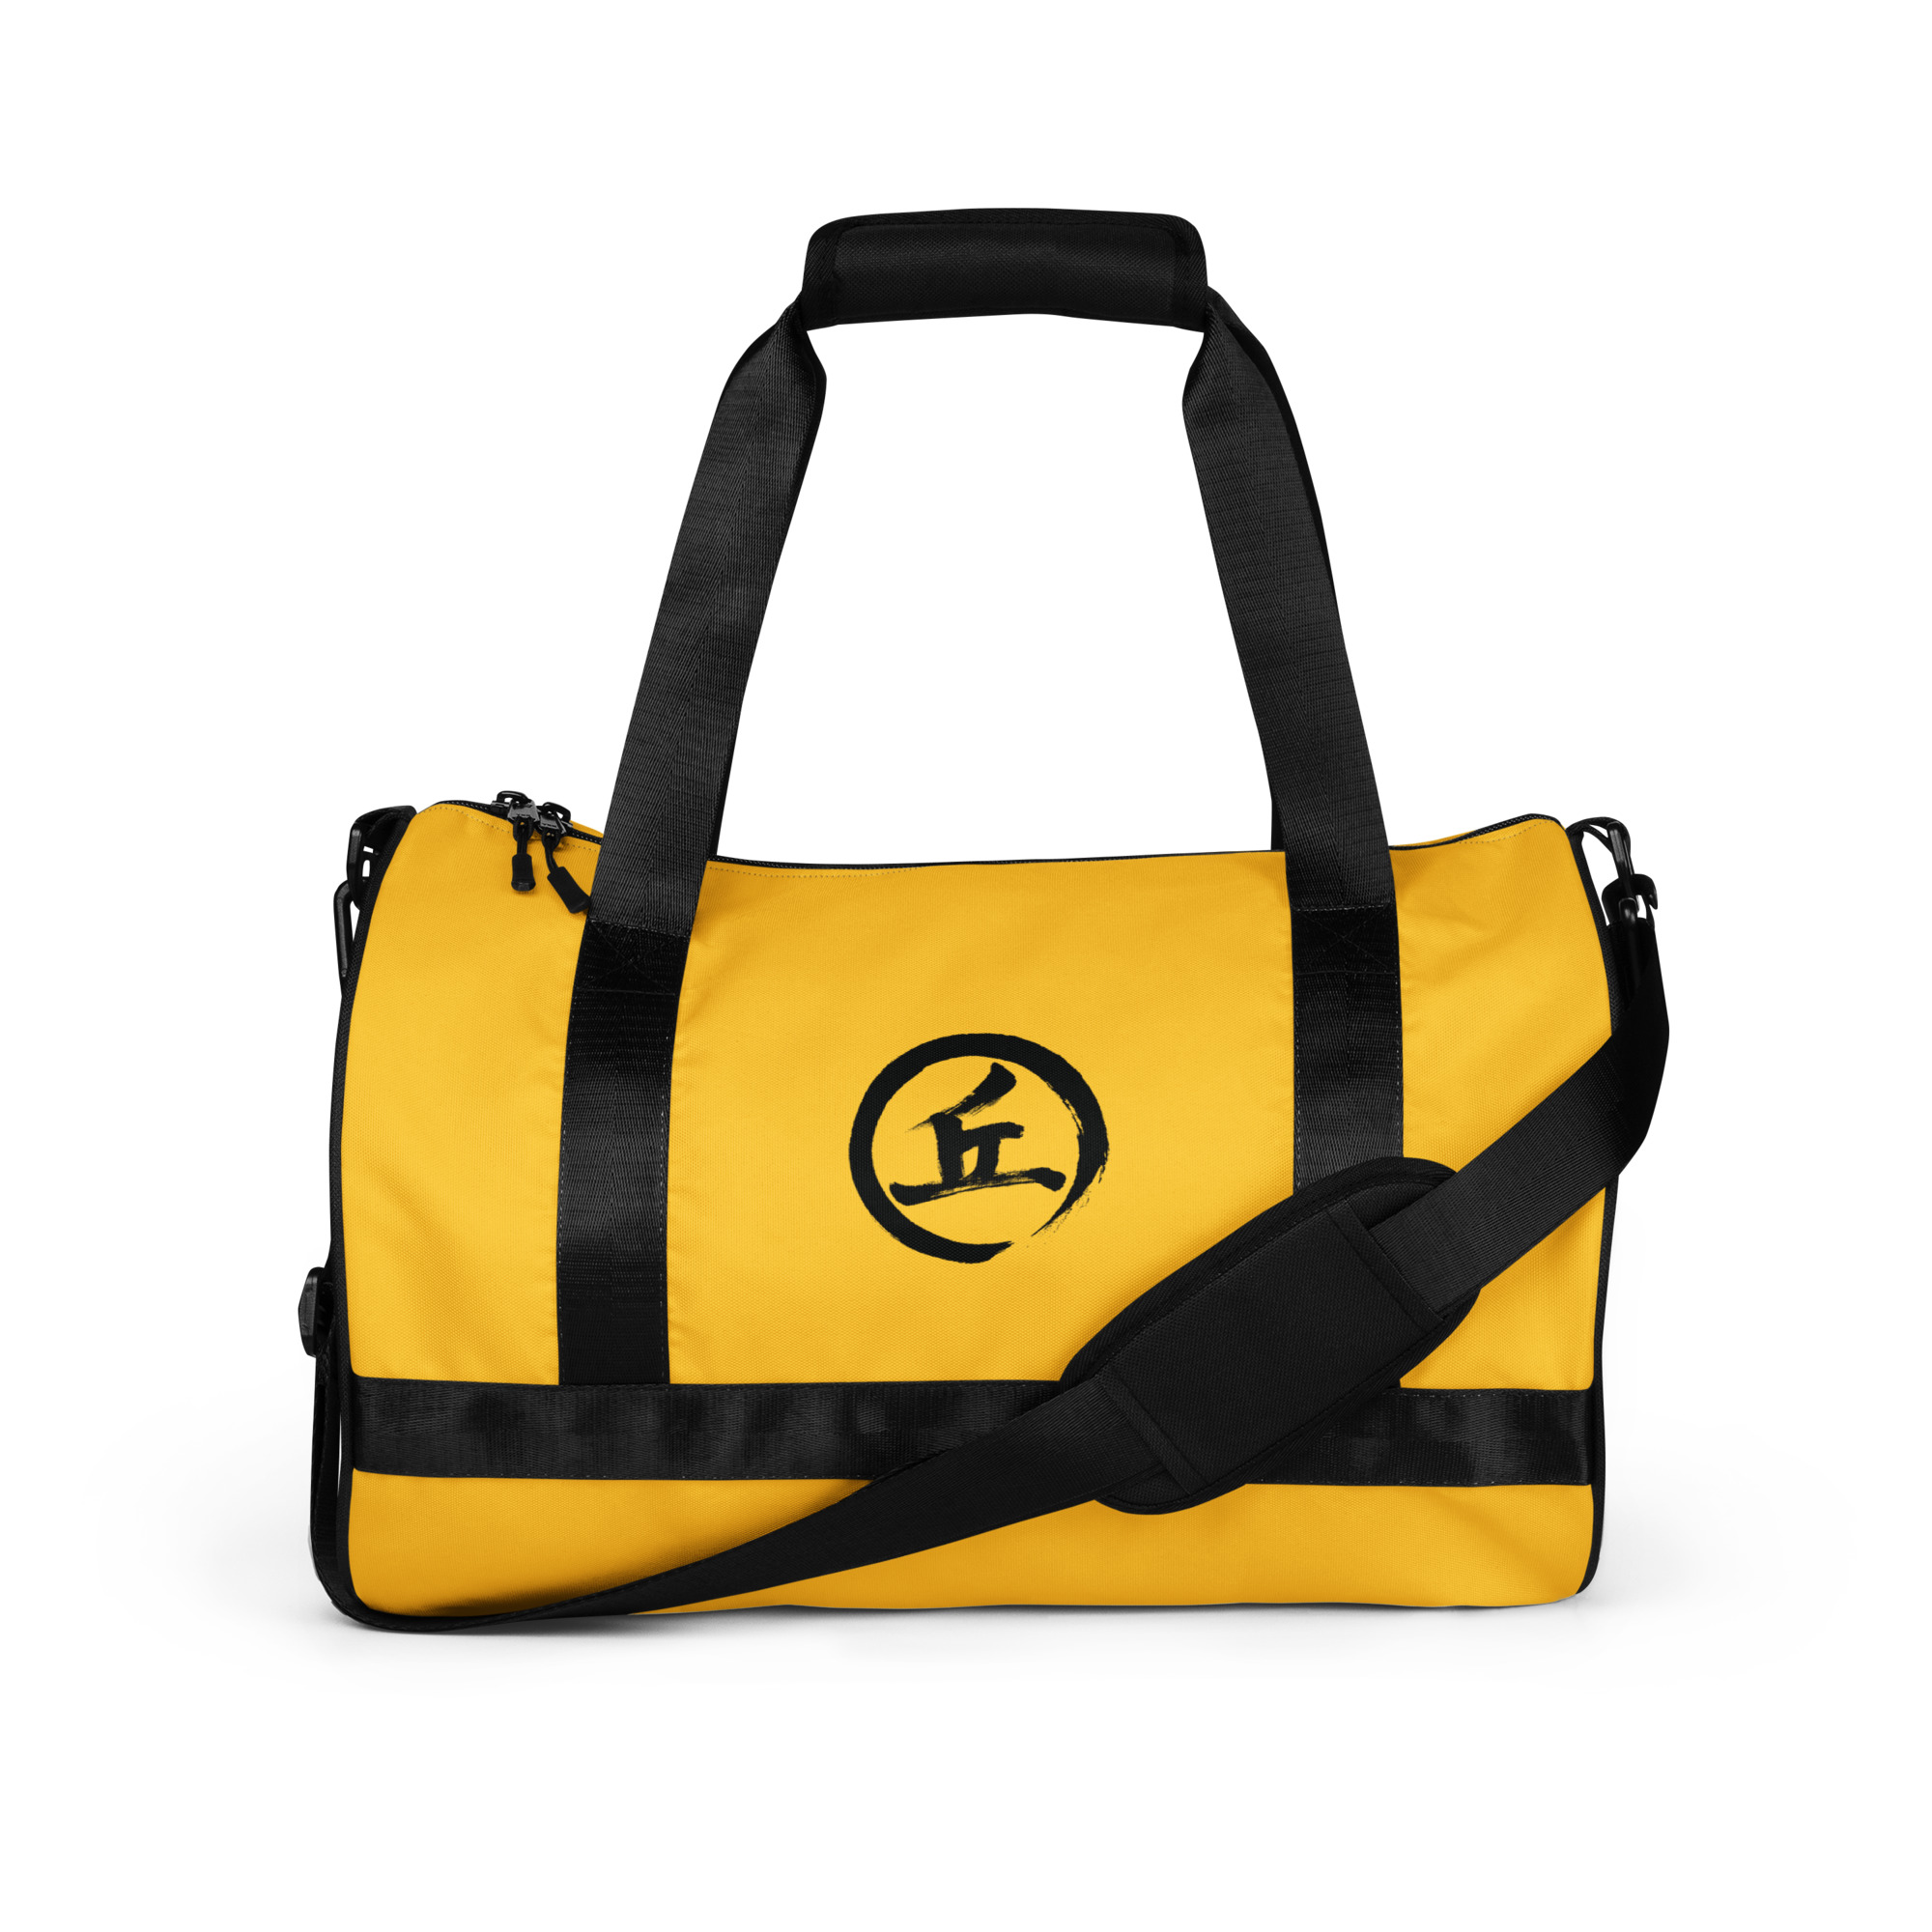 Nina Yau - NY Small Gym Bag (Yellow)